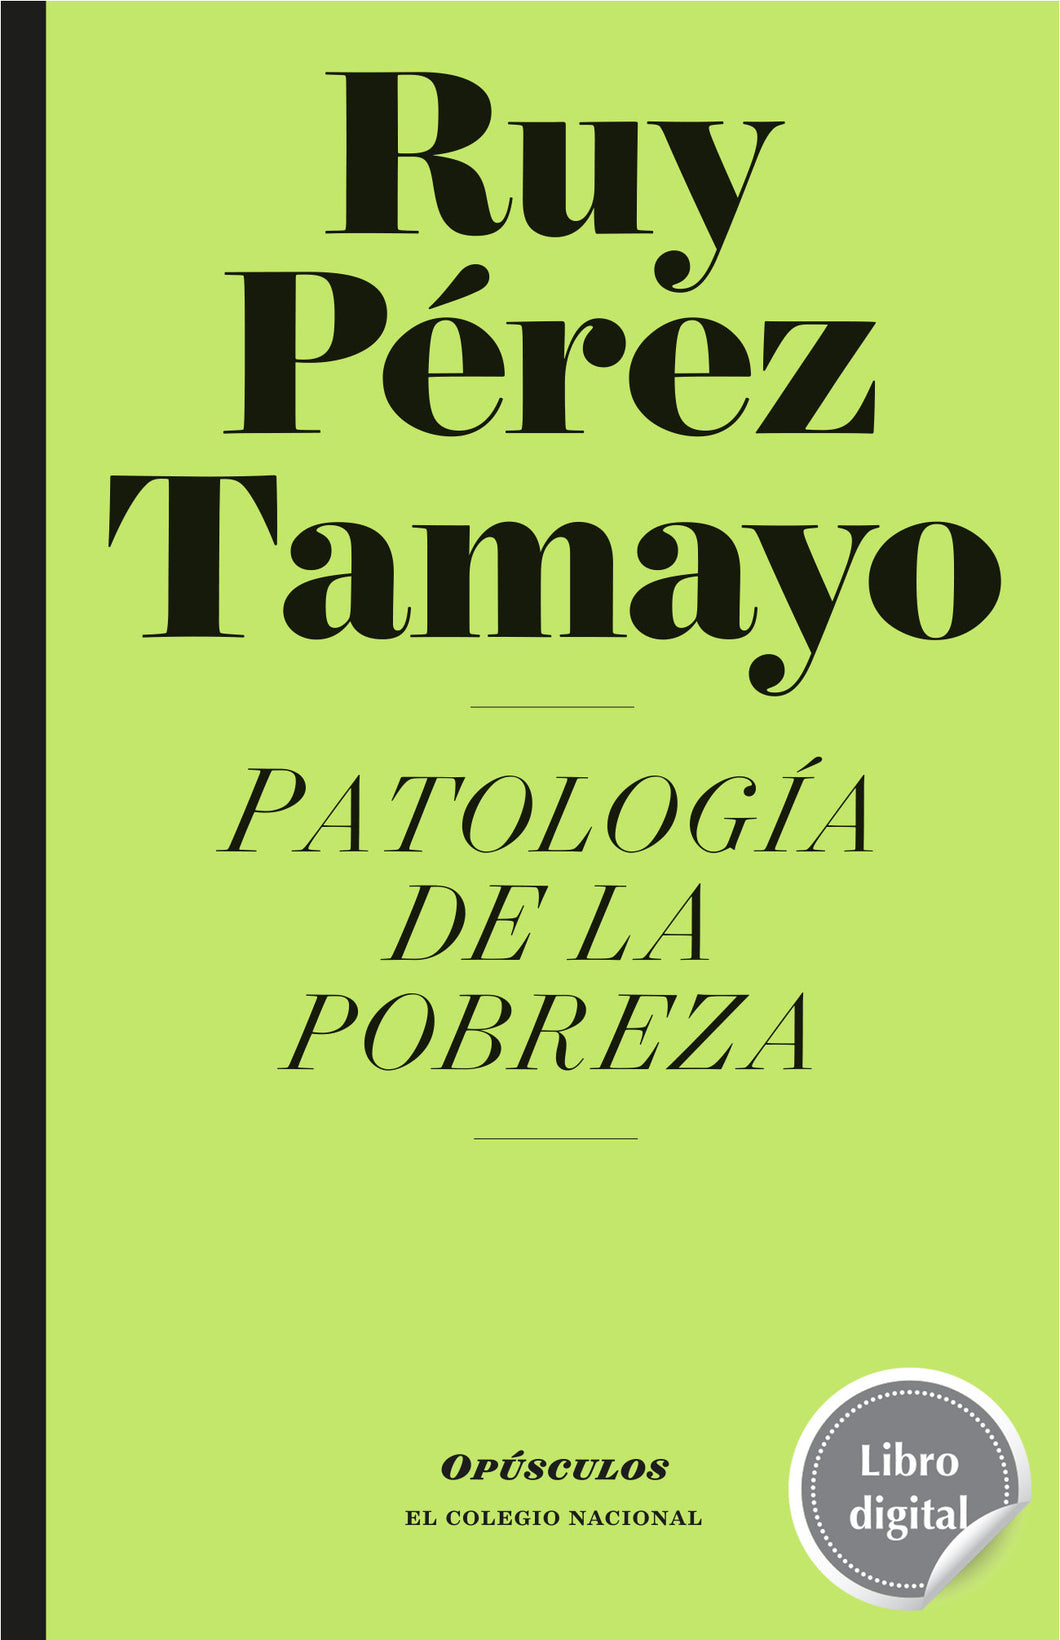 Patología de la pobreza de Ruy Pérez Tamayo, libro digital de El Colegio Nacional, Libros Colnal